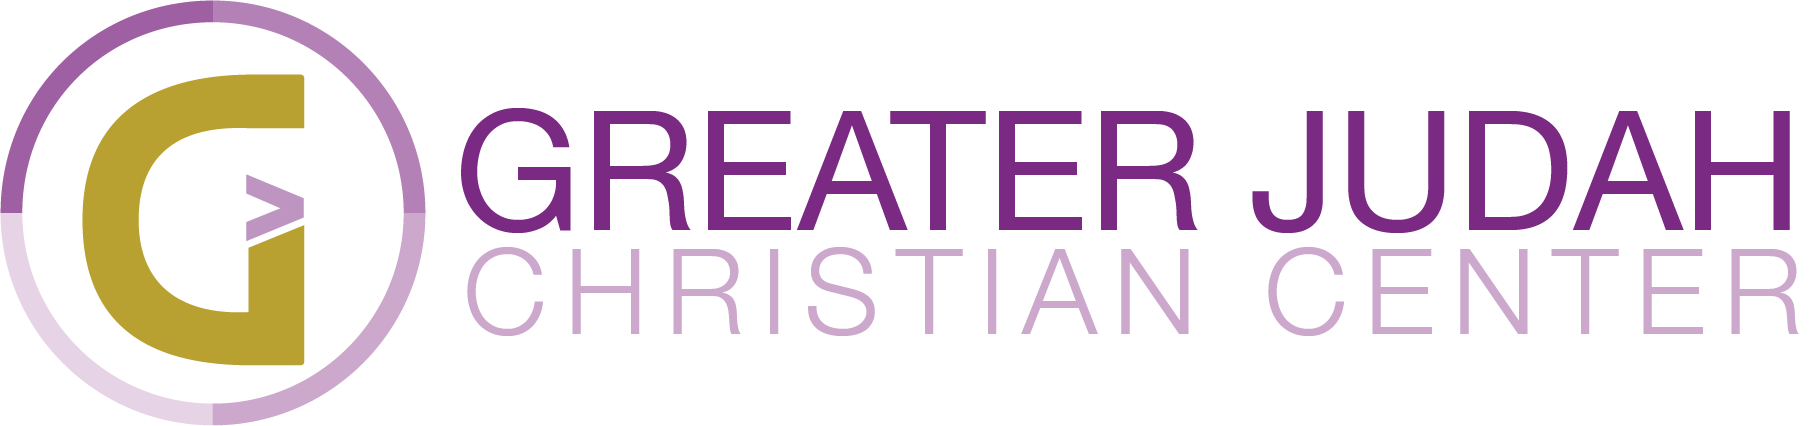 Greater Judah Christian Center | Greater is Here!